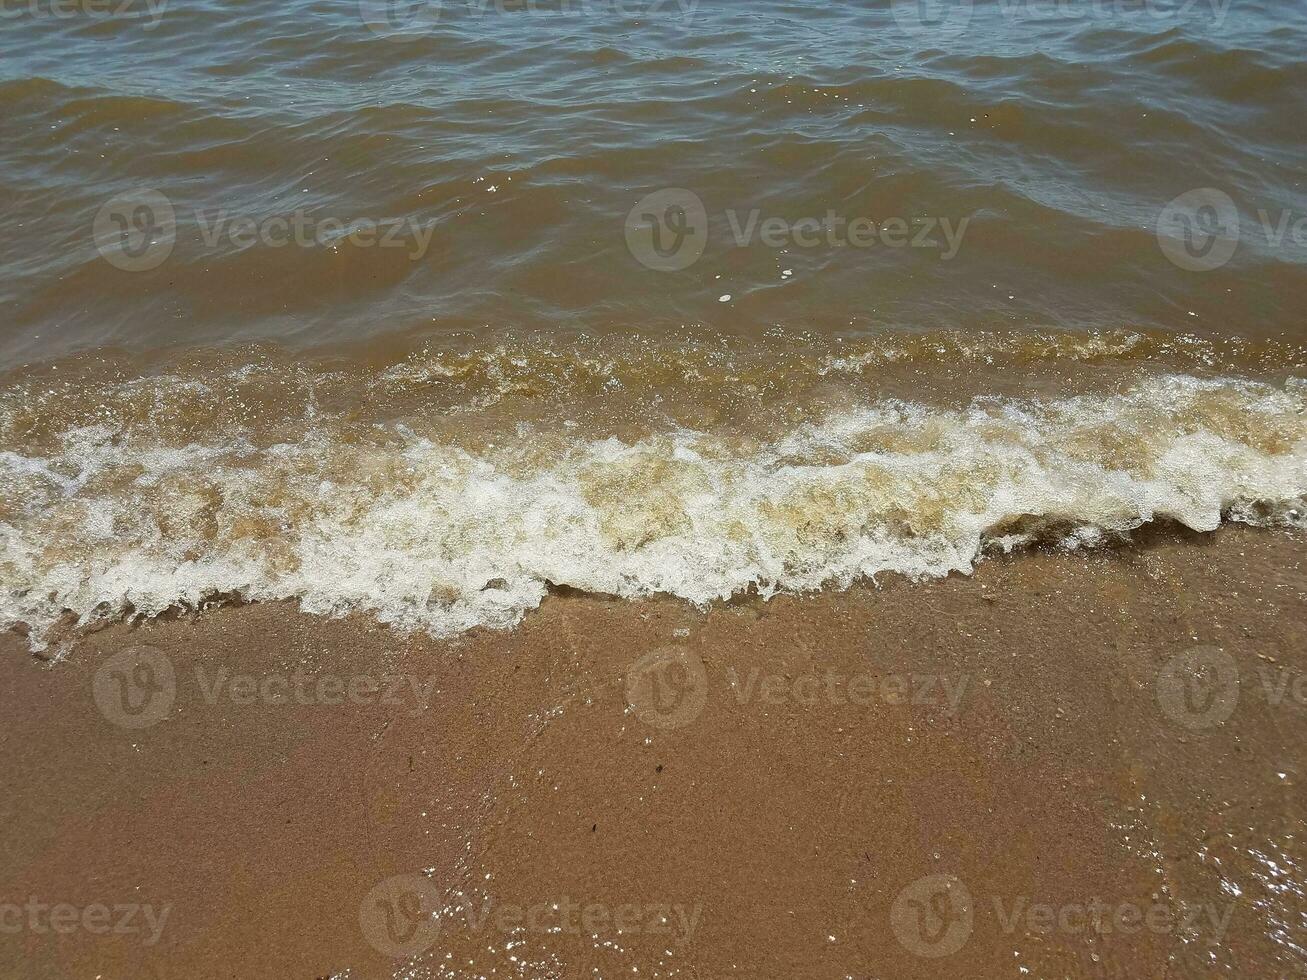 areia com ondas e pedras foto